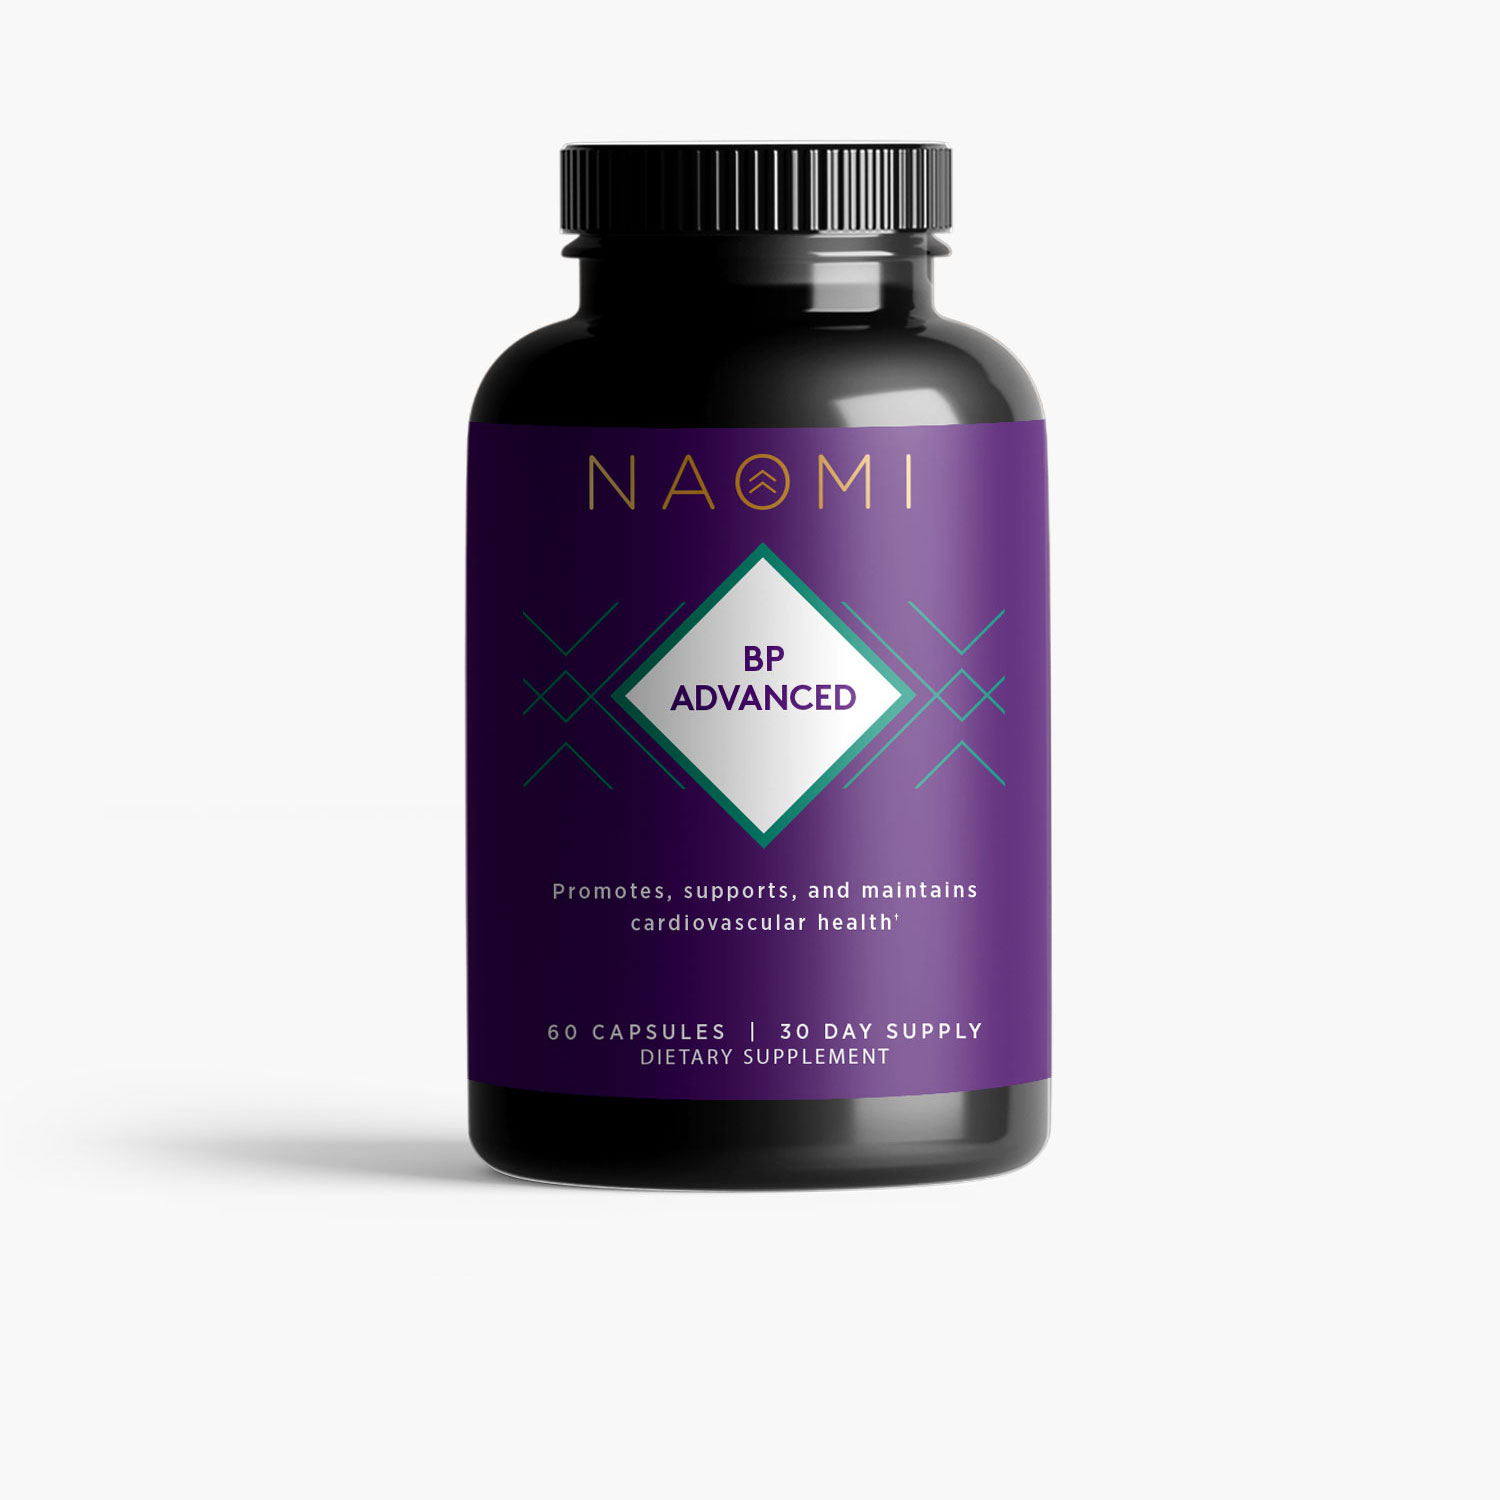 naomi bp advanced - purple bottle